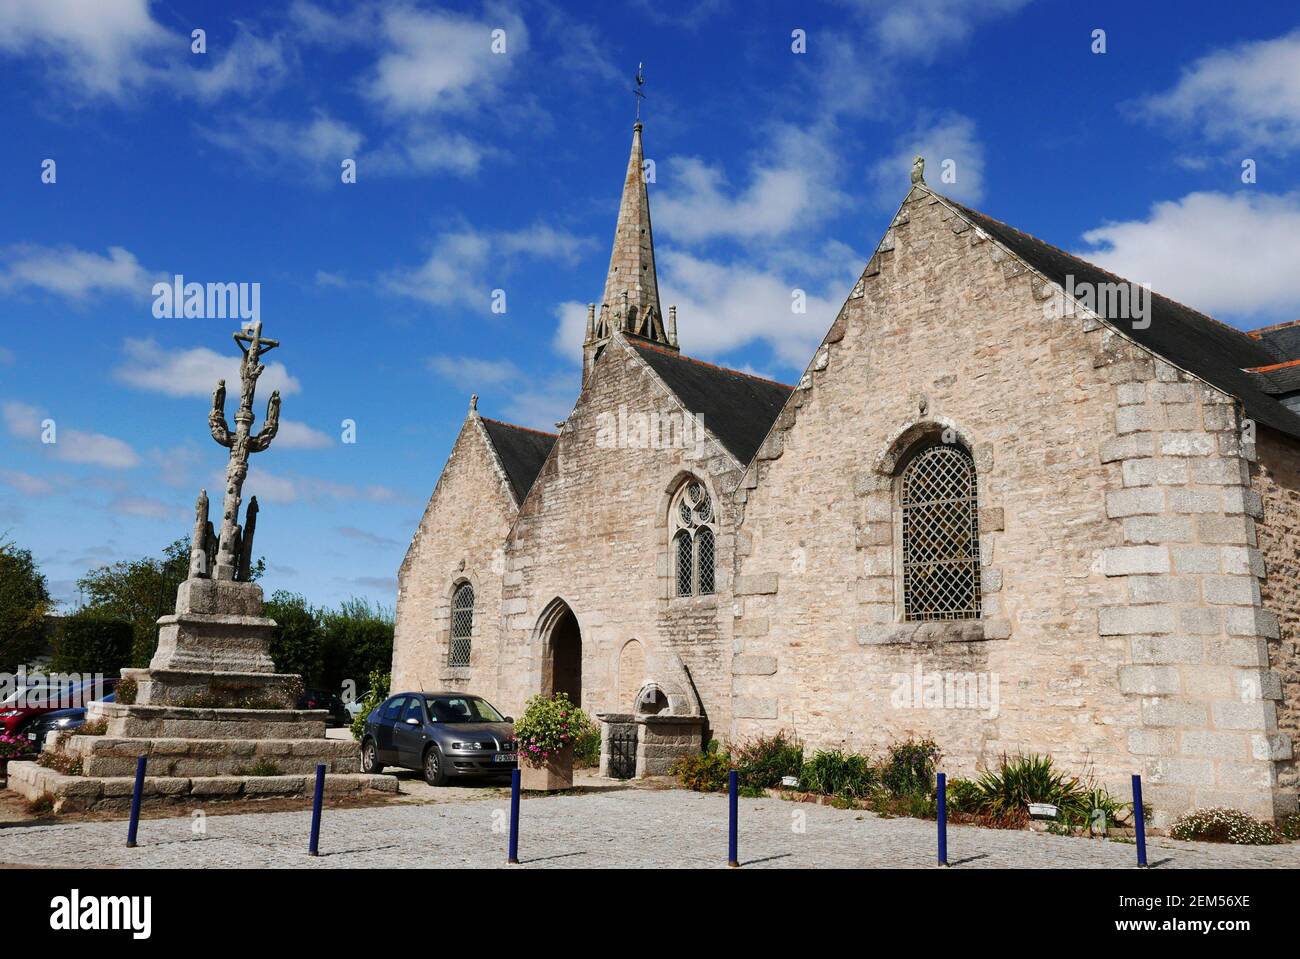 Eglise de Saint-Amet, Nizon calvary, deposition of Christ, Pont-Aven, Finistere, Bretagne, Brittany, France, Europe Stock Photo